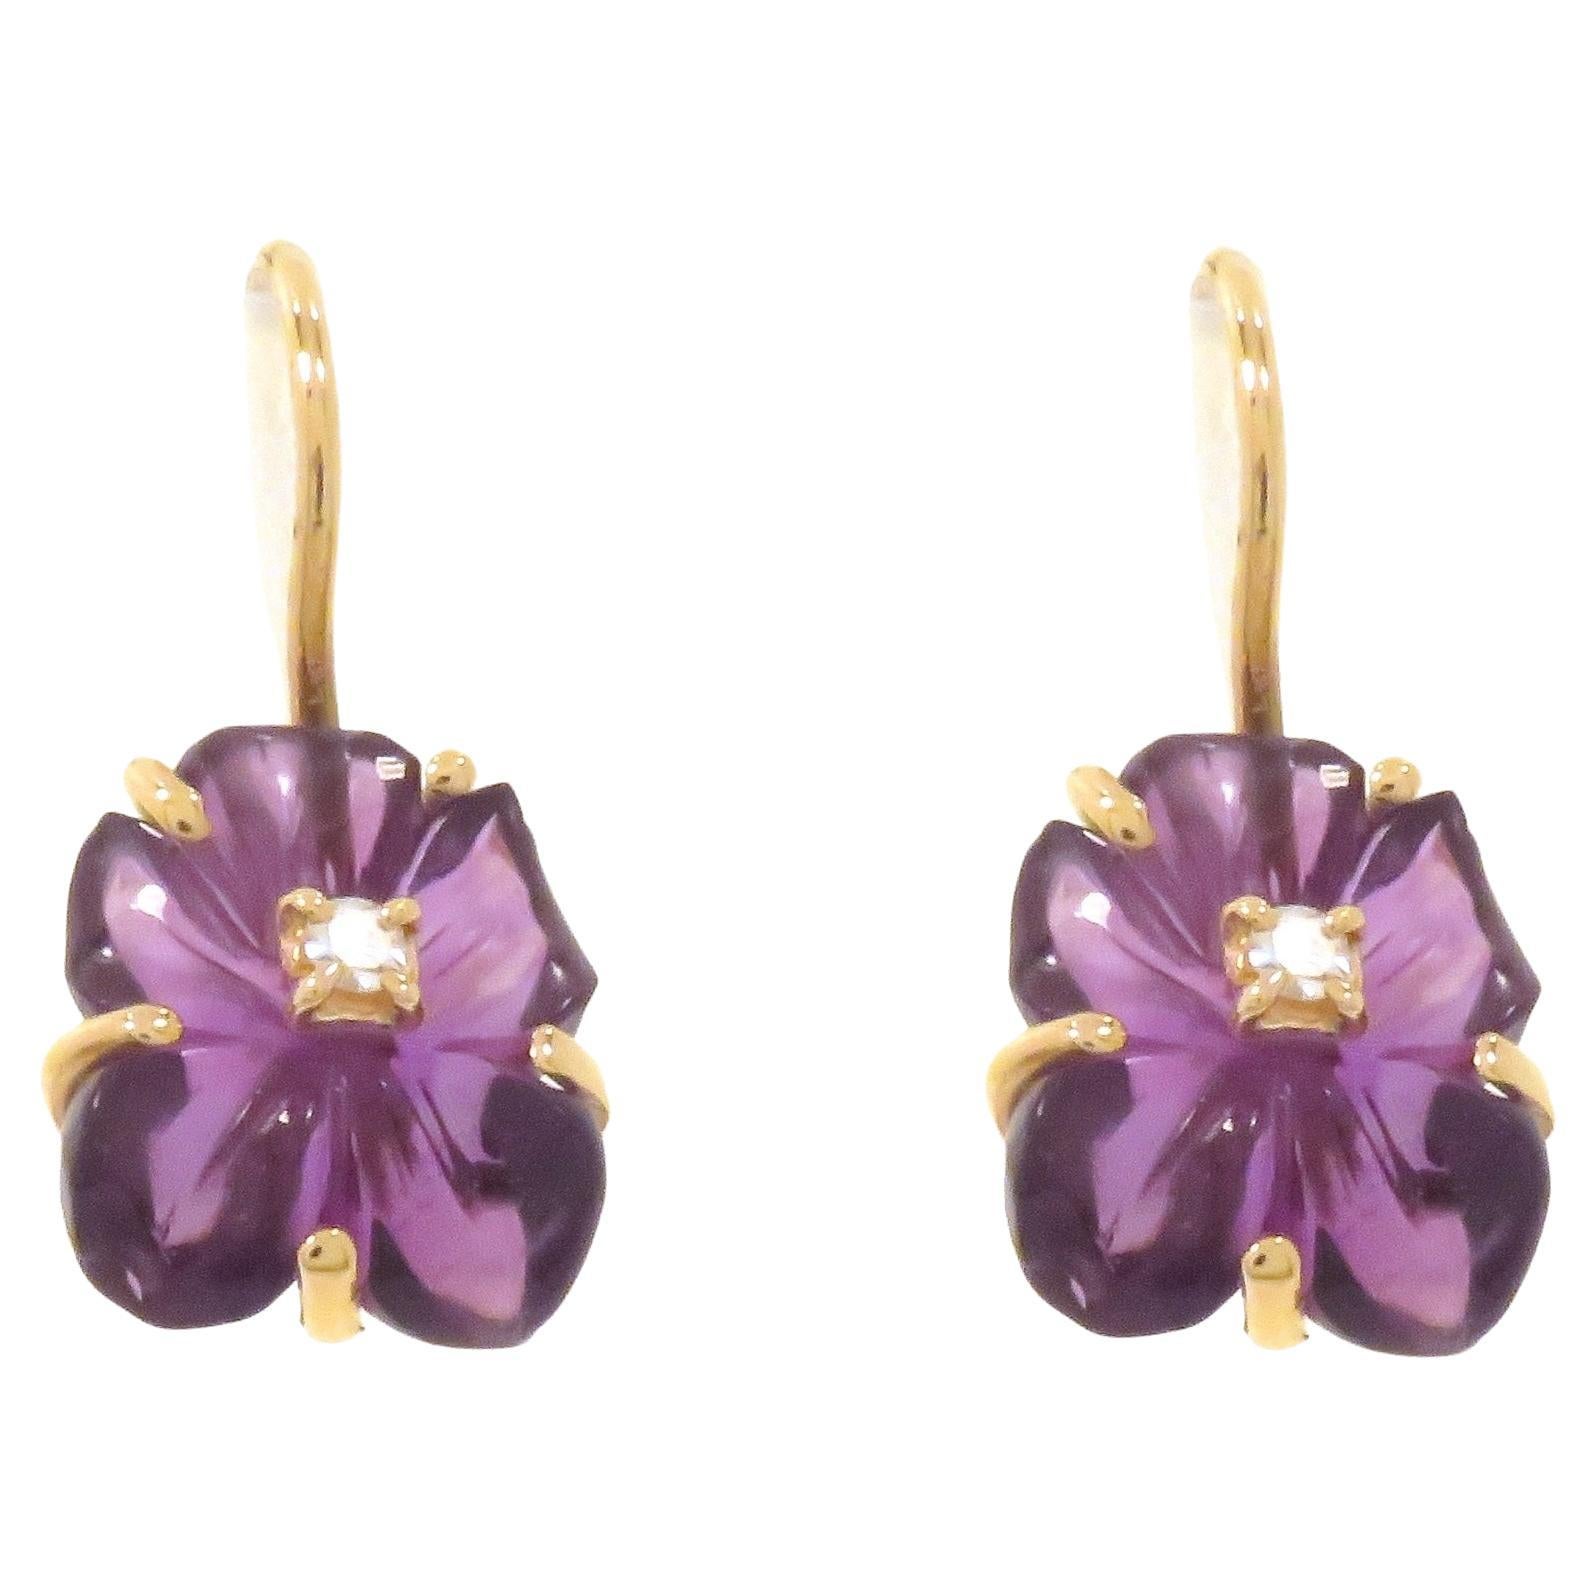 Brown Diamonds Rubies Rock Crystal Rose Gold Earrings Handcrafted in ...